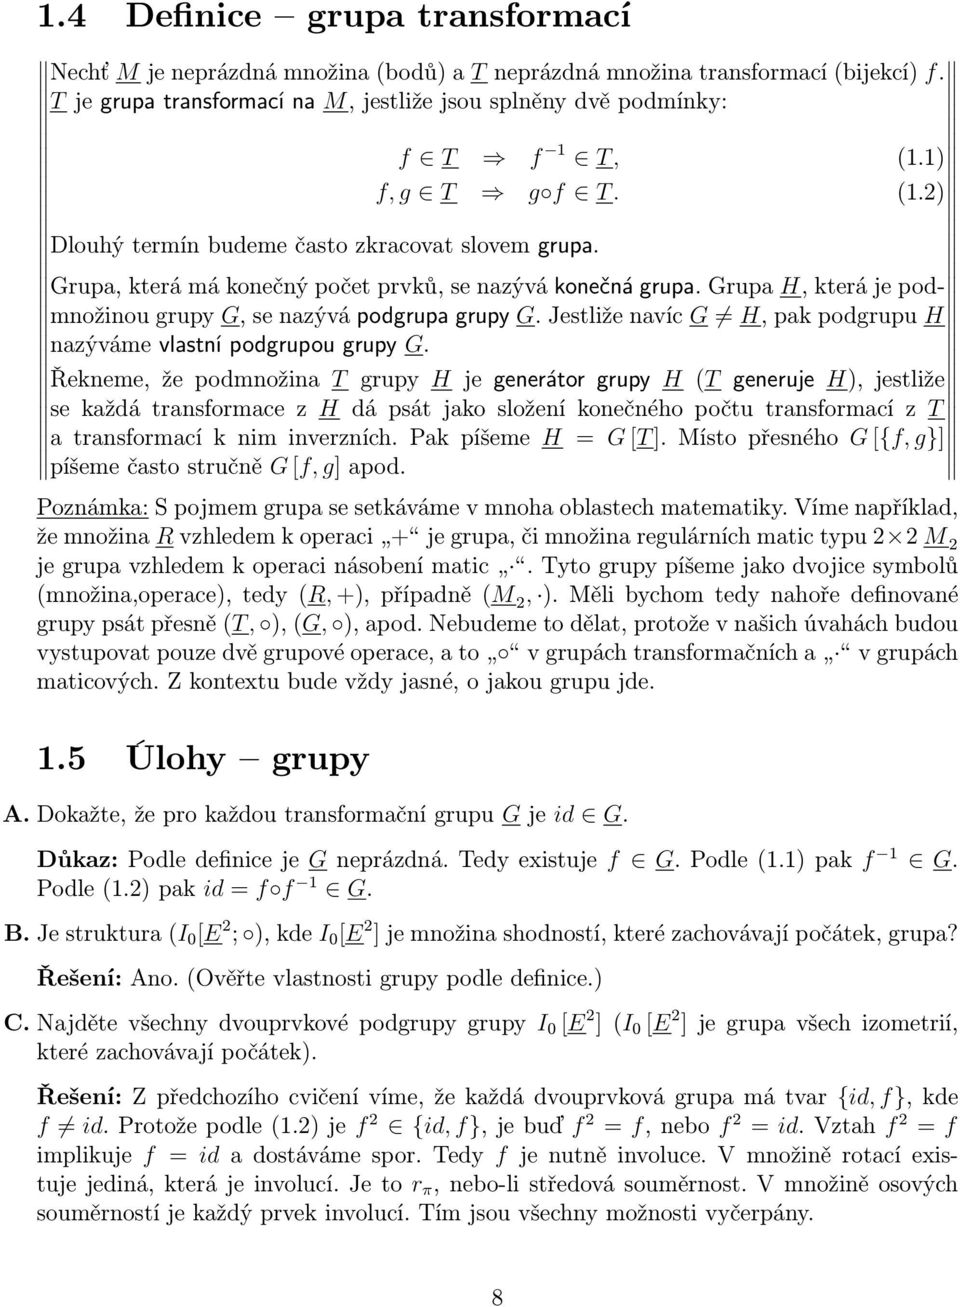 Grupa H, která je podmnožinou grupy G, se nazývá podgrupa grupy G. Jestliže navíc G H, pak podgrupu H nazýváme vlastní podgrupou grupy G.